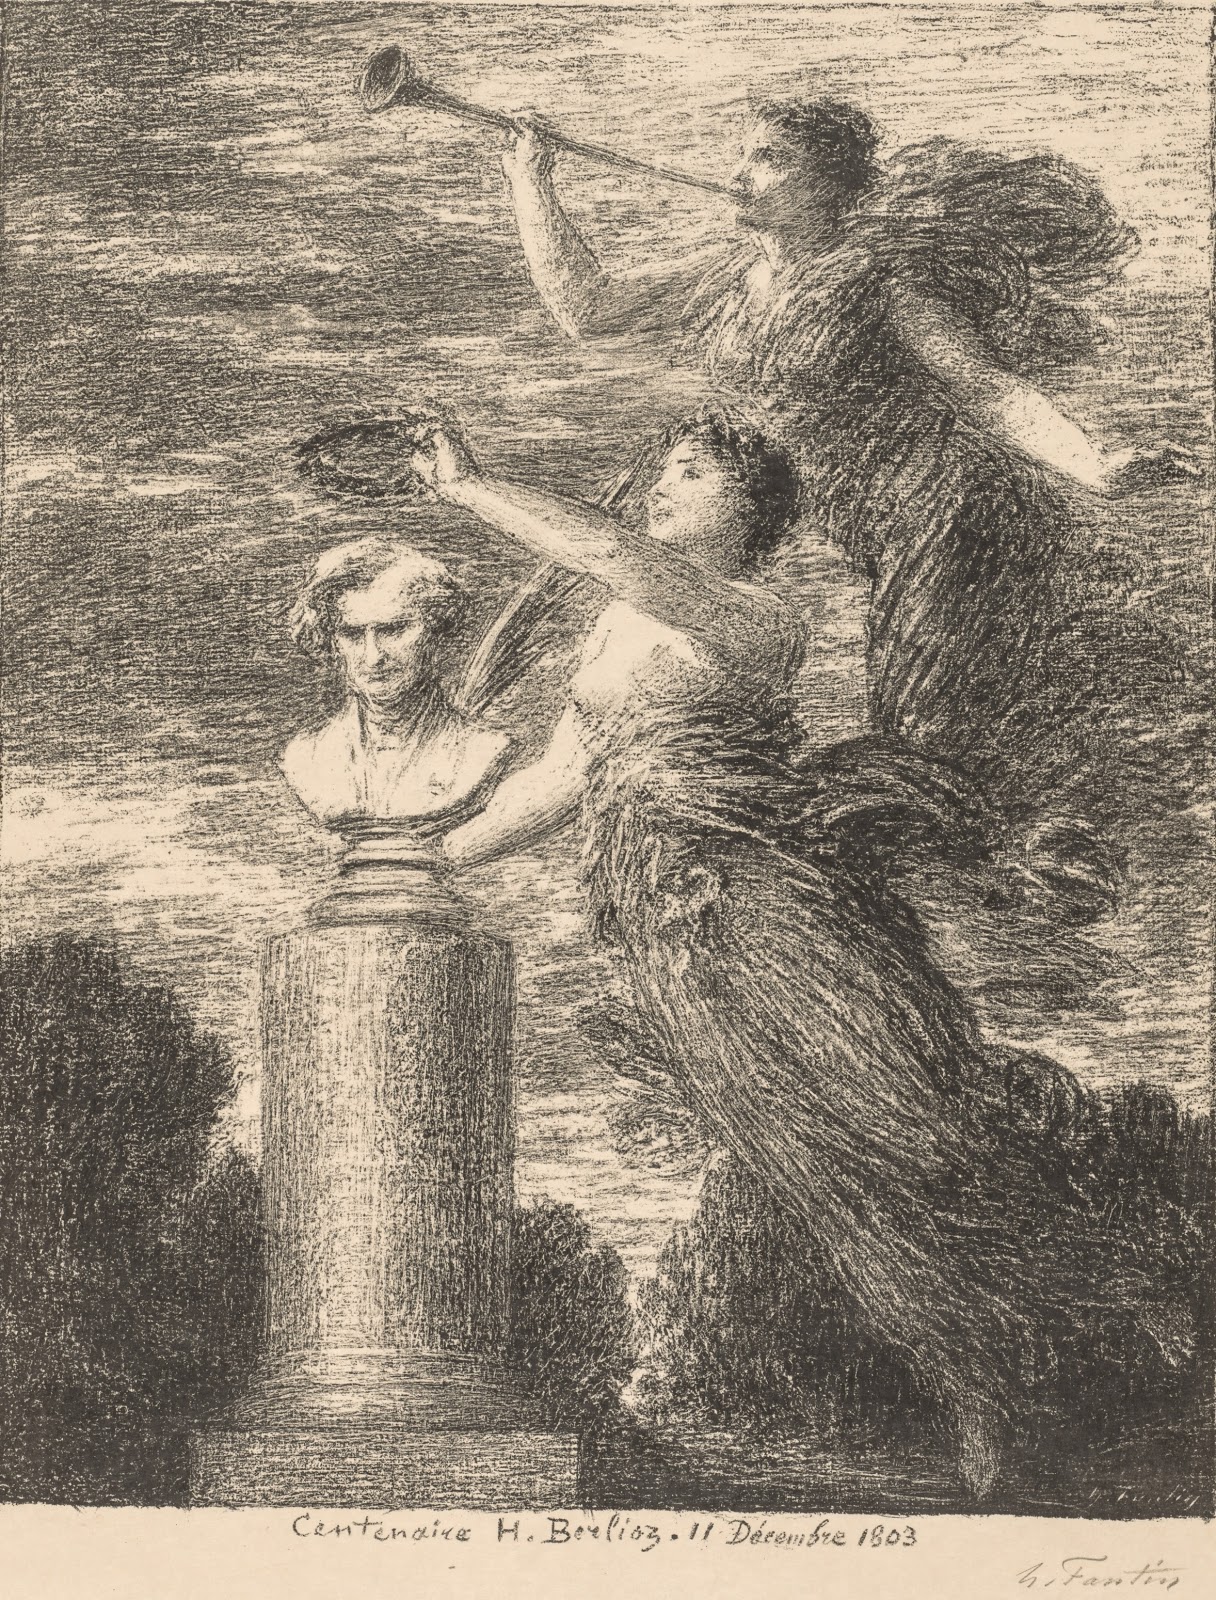 Henri+Fantin+Latour-1836-1904 (23).jpg